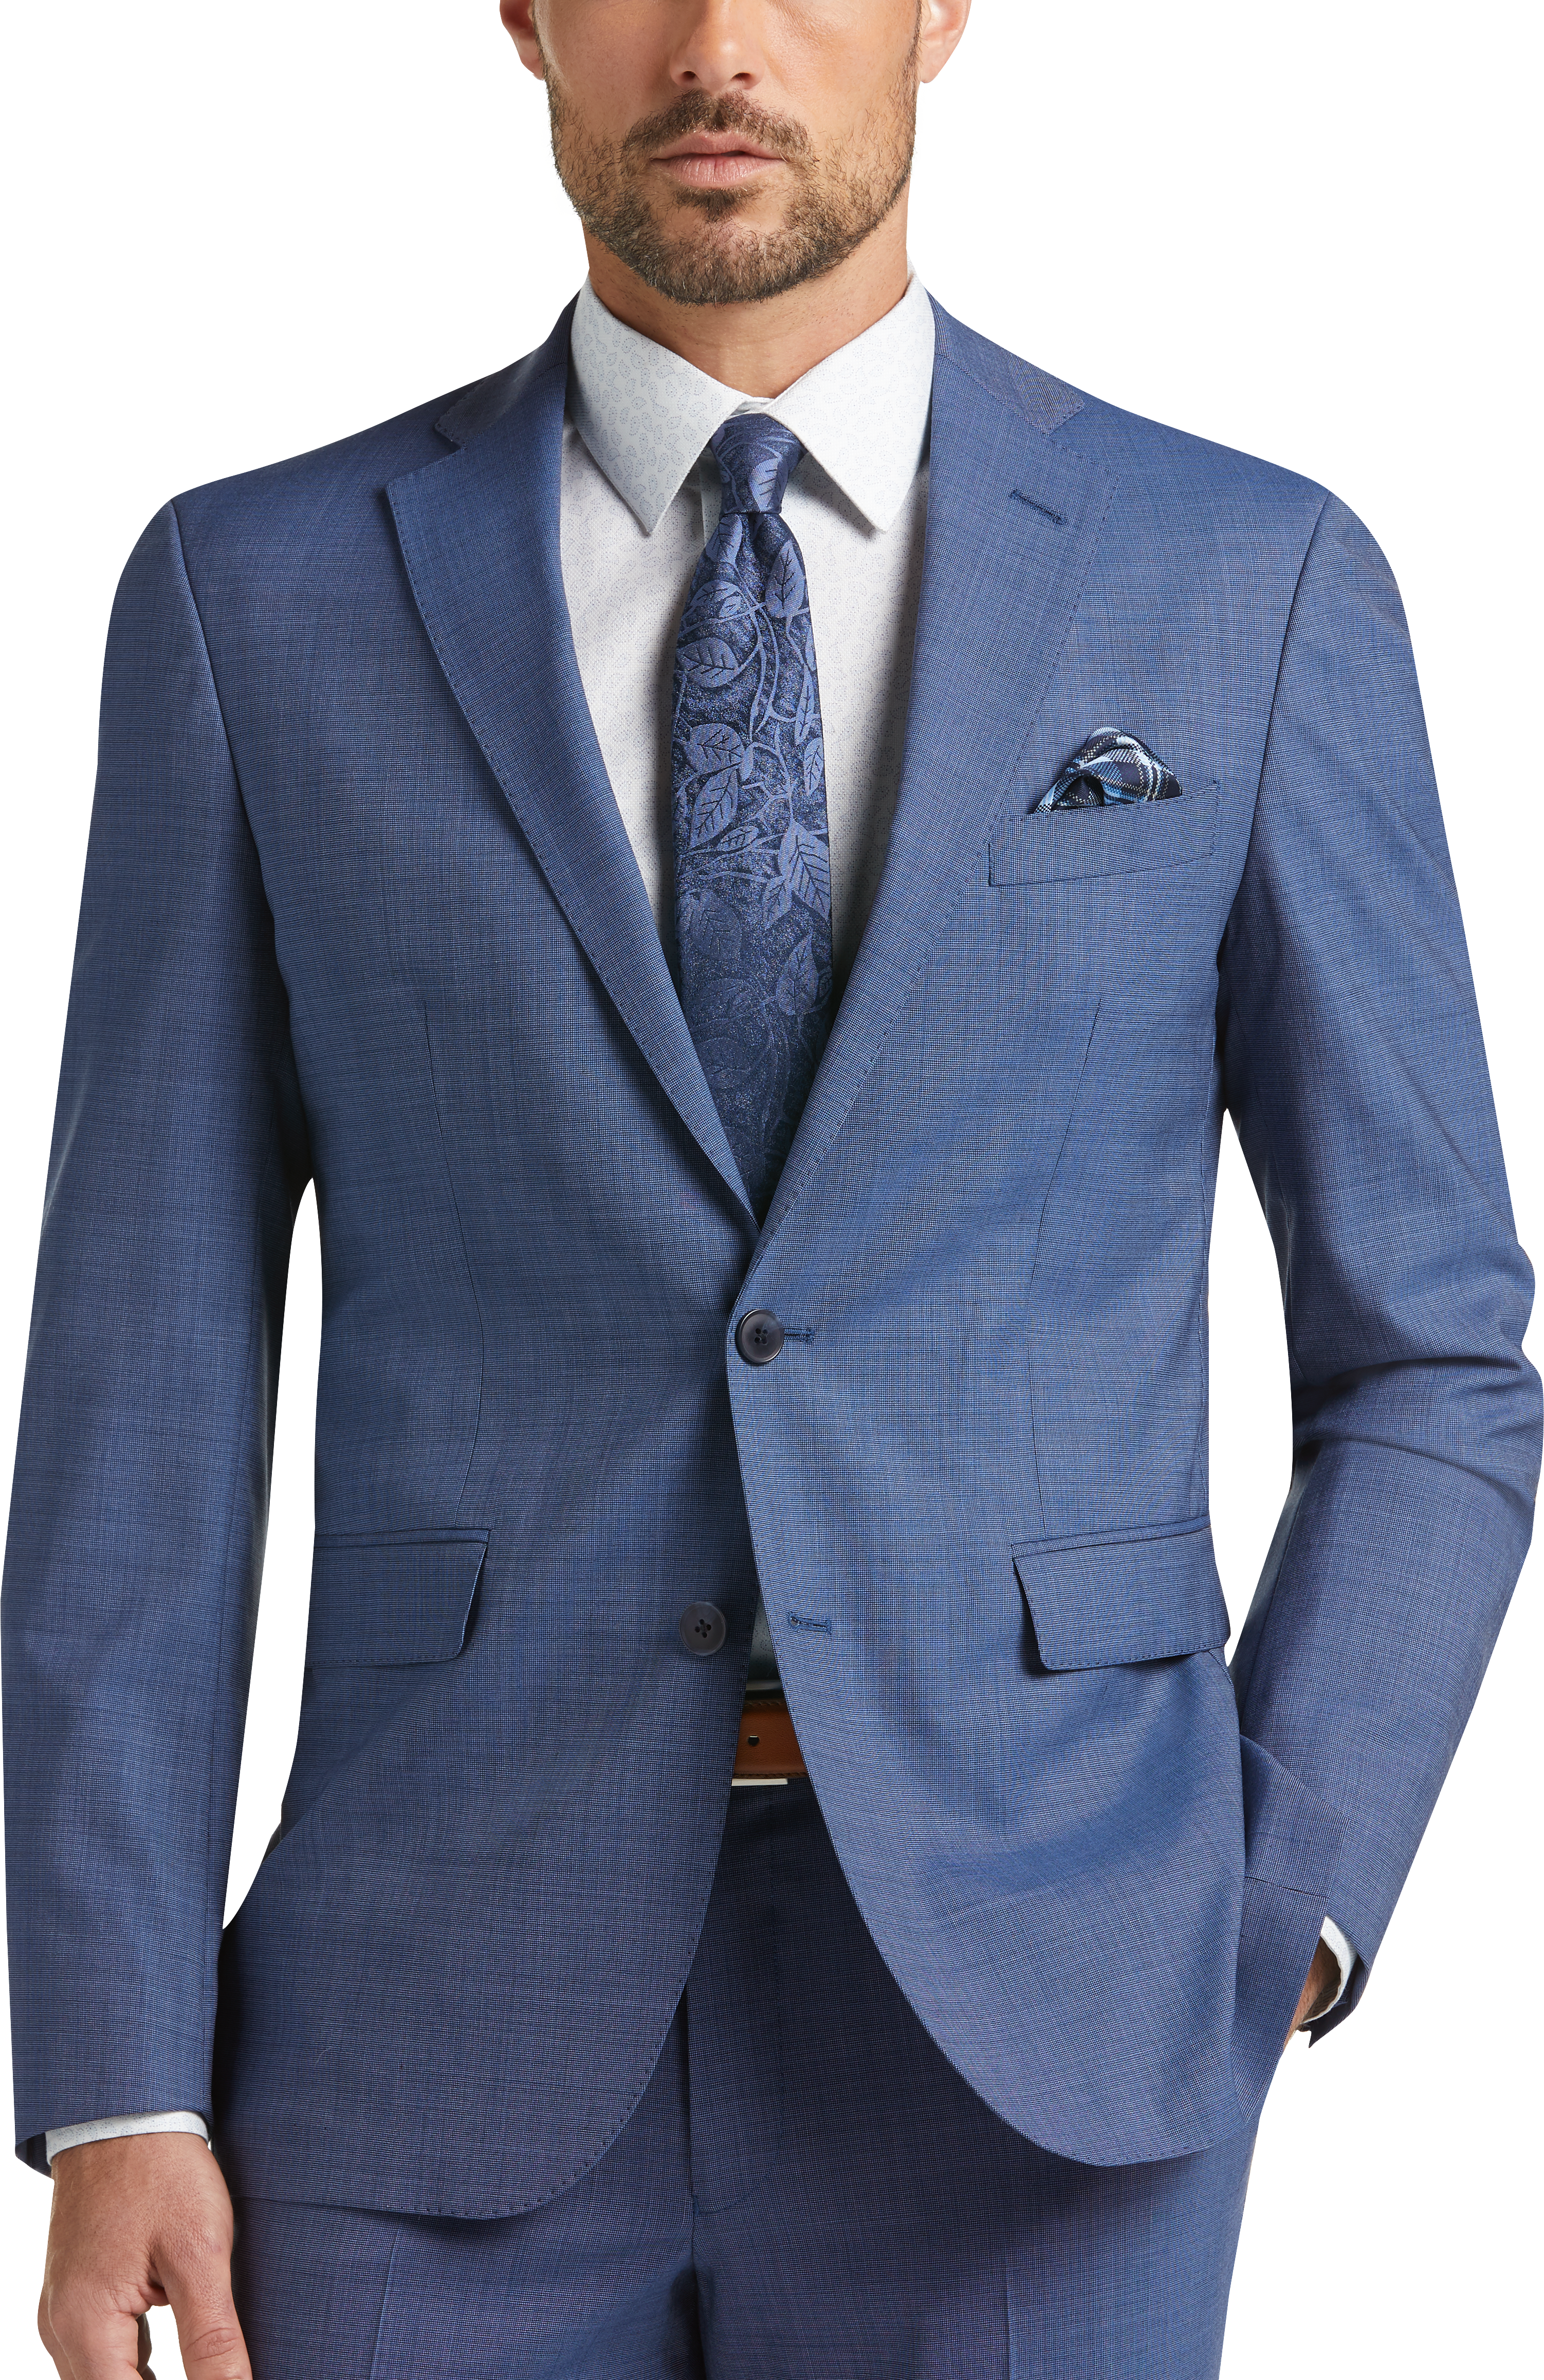 Cole Haan Grand.ØS Blue Tic Coolmax Lined Slim Fit Suit - Men's Suits ...